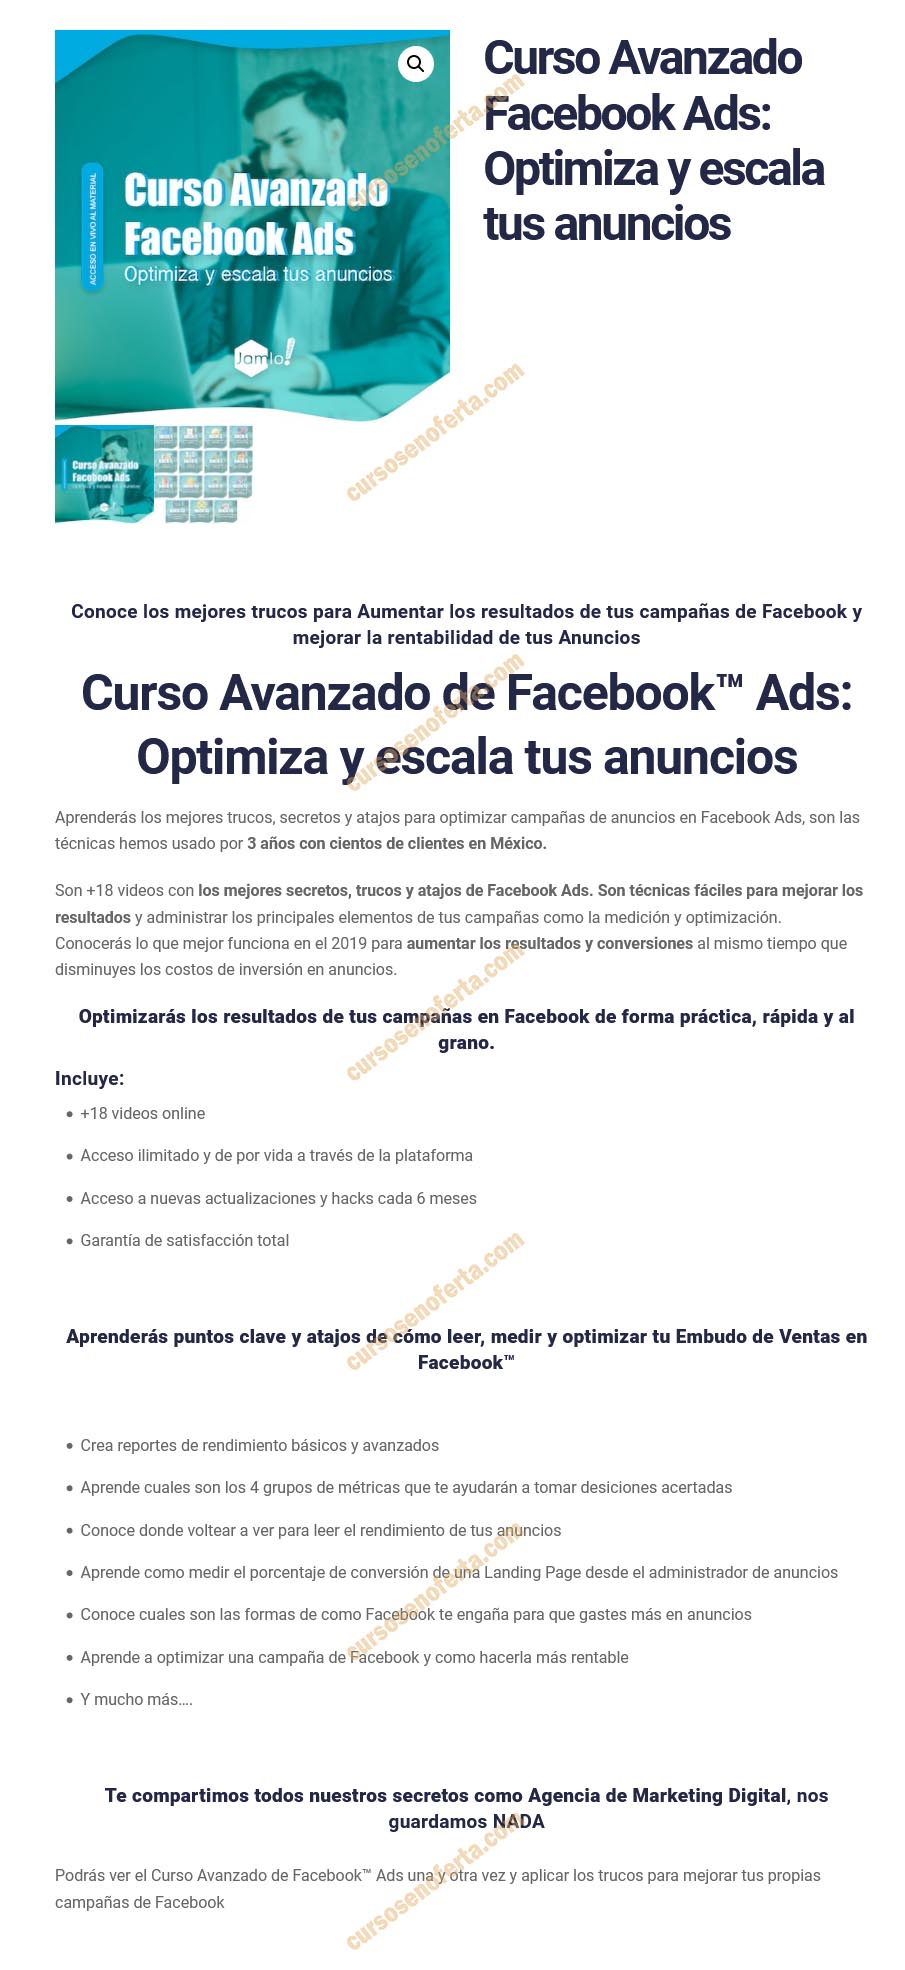 Curso avanzado Facebook Ads - Optimiza y escala tus anuncios